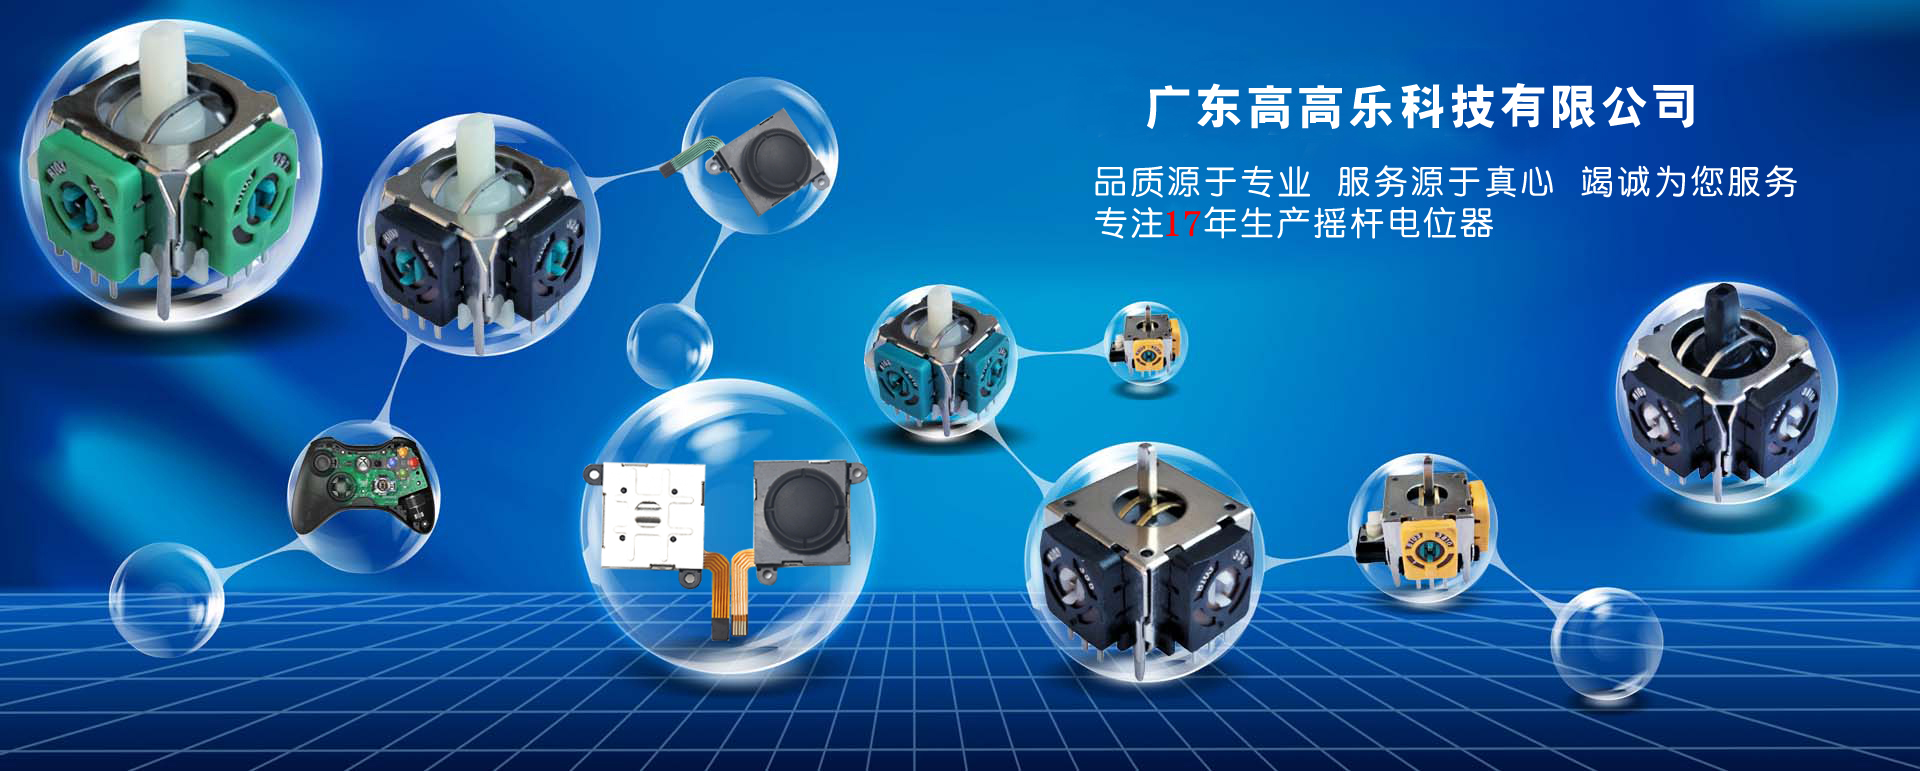 广东高高乐科技有限公司[2018-01-15 10:57:28]专业生产3D摇杆电位器